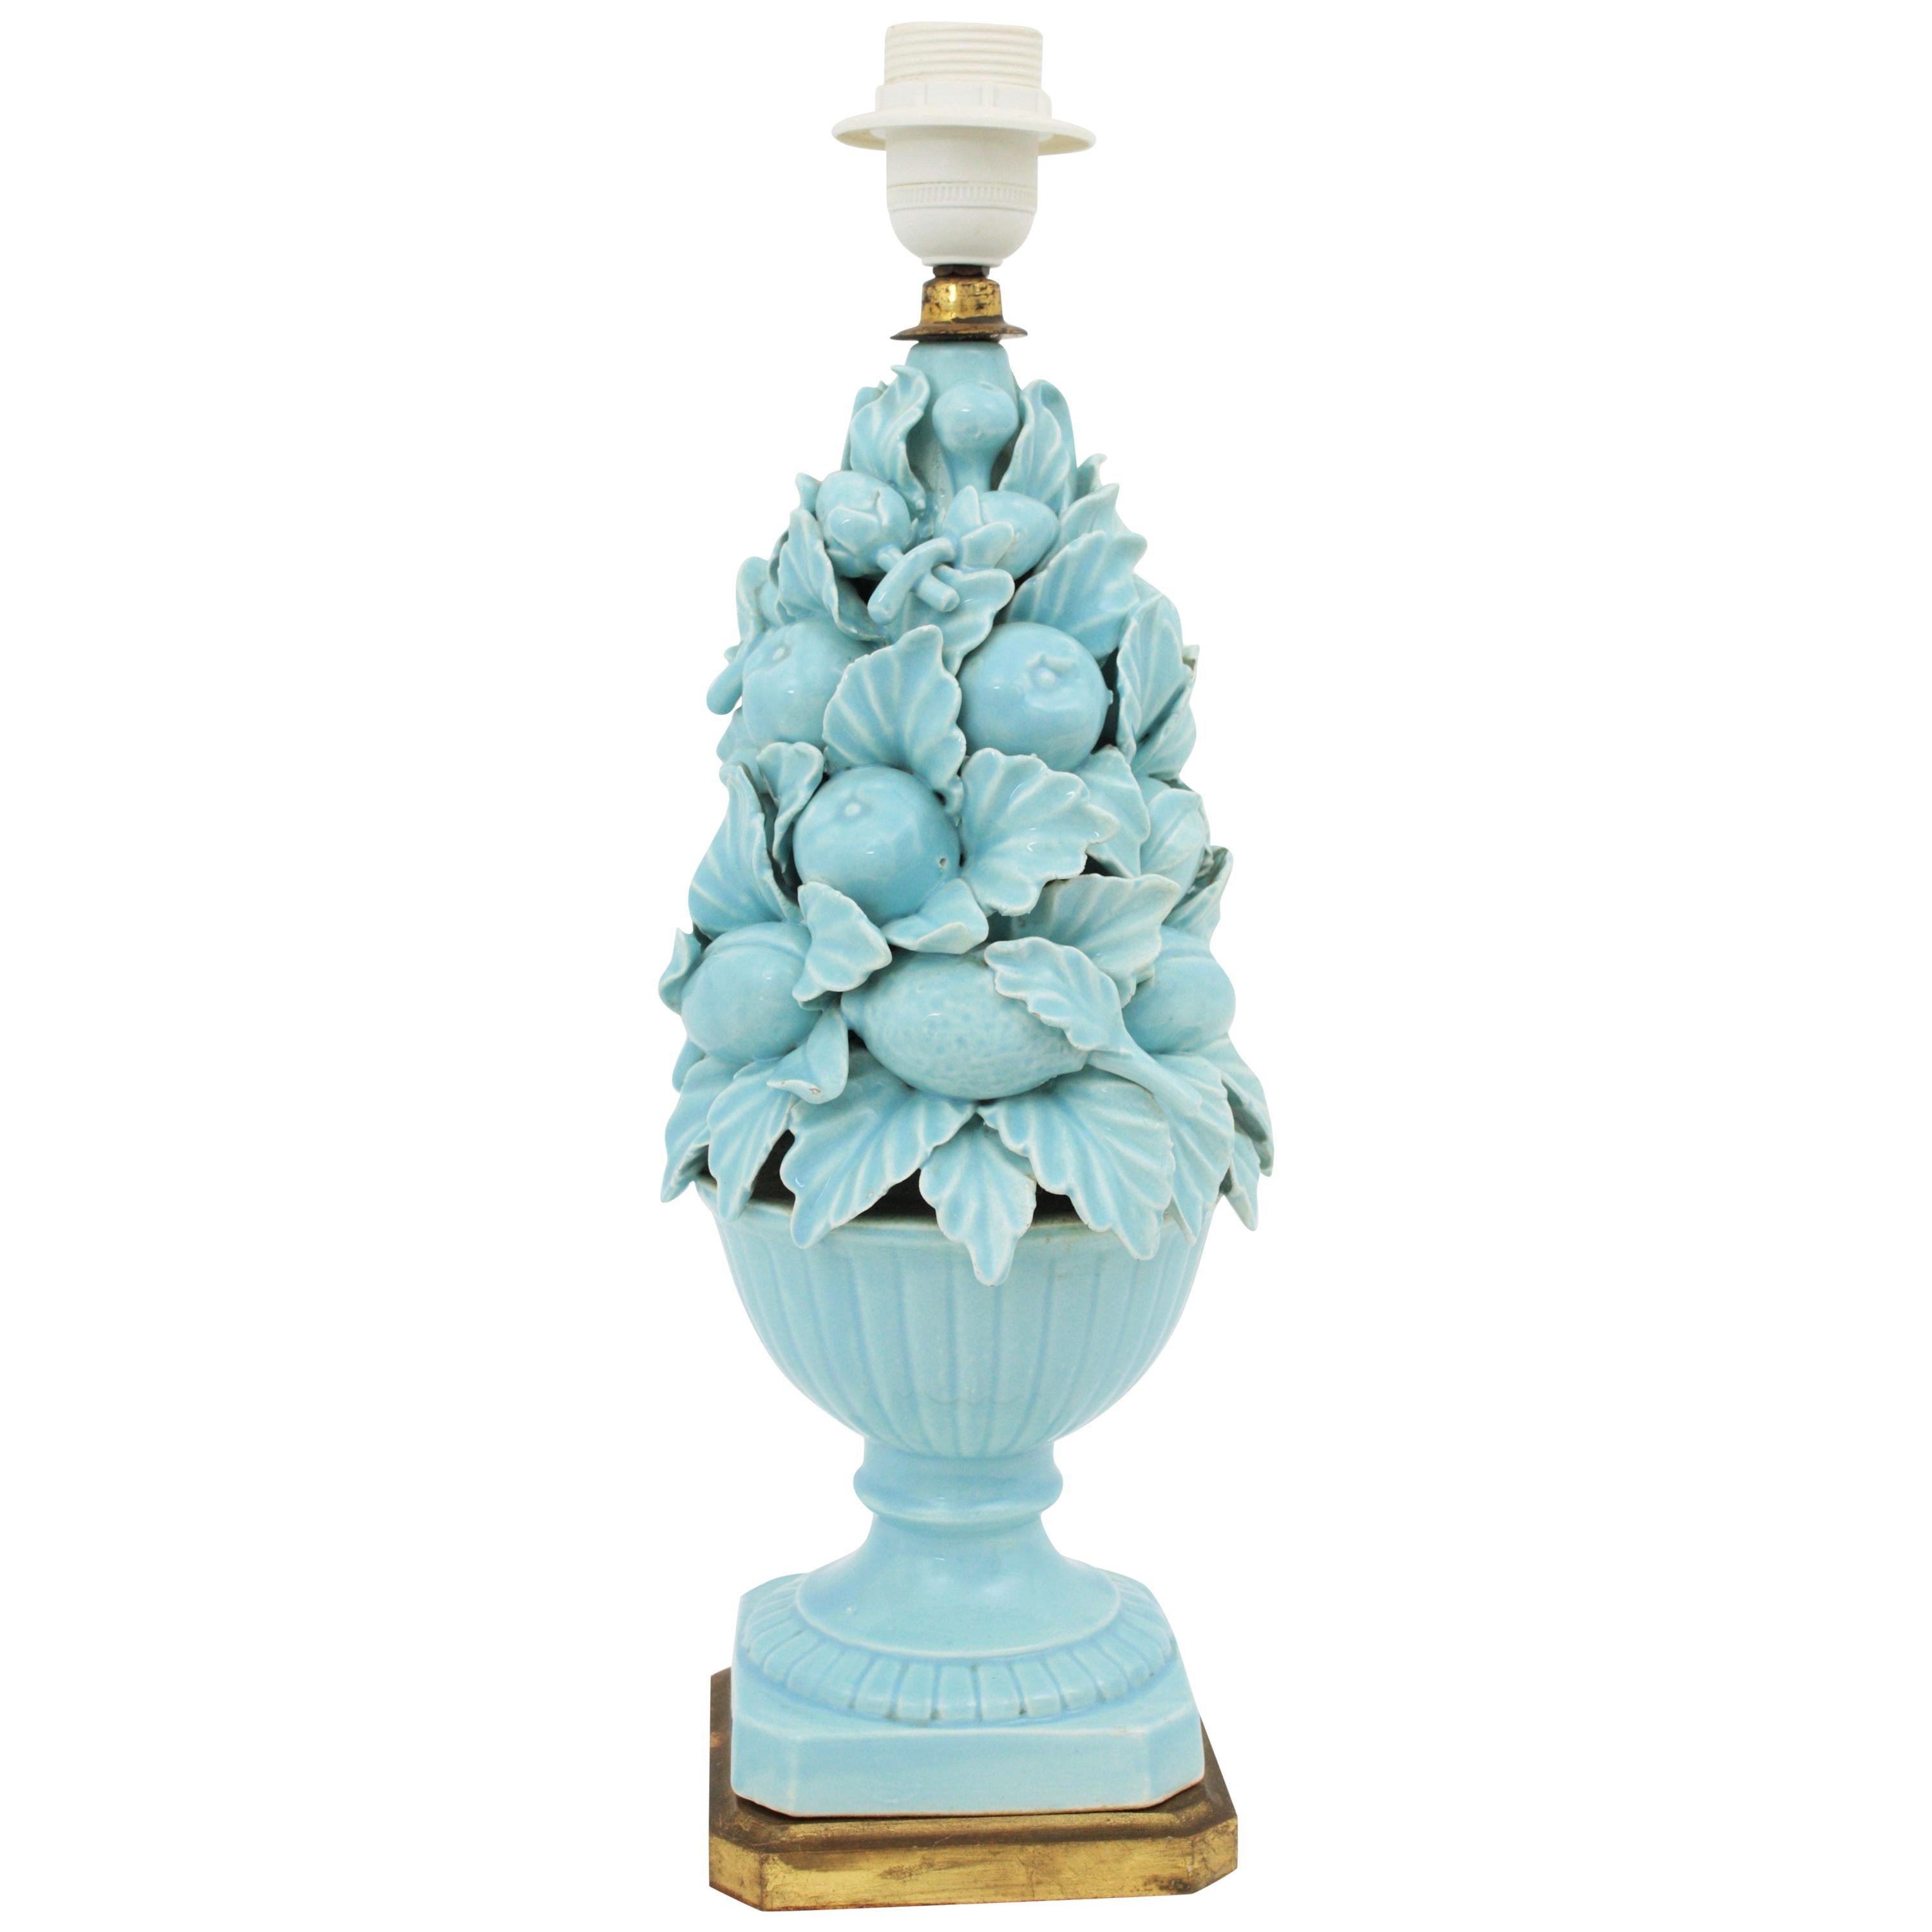 Spanish 1960s Majolica Blue Glazed Manises Ceramic Fruit Table Lamp